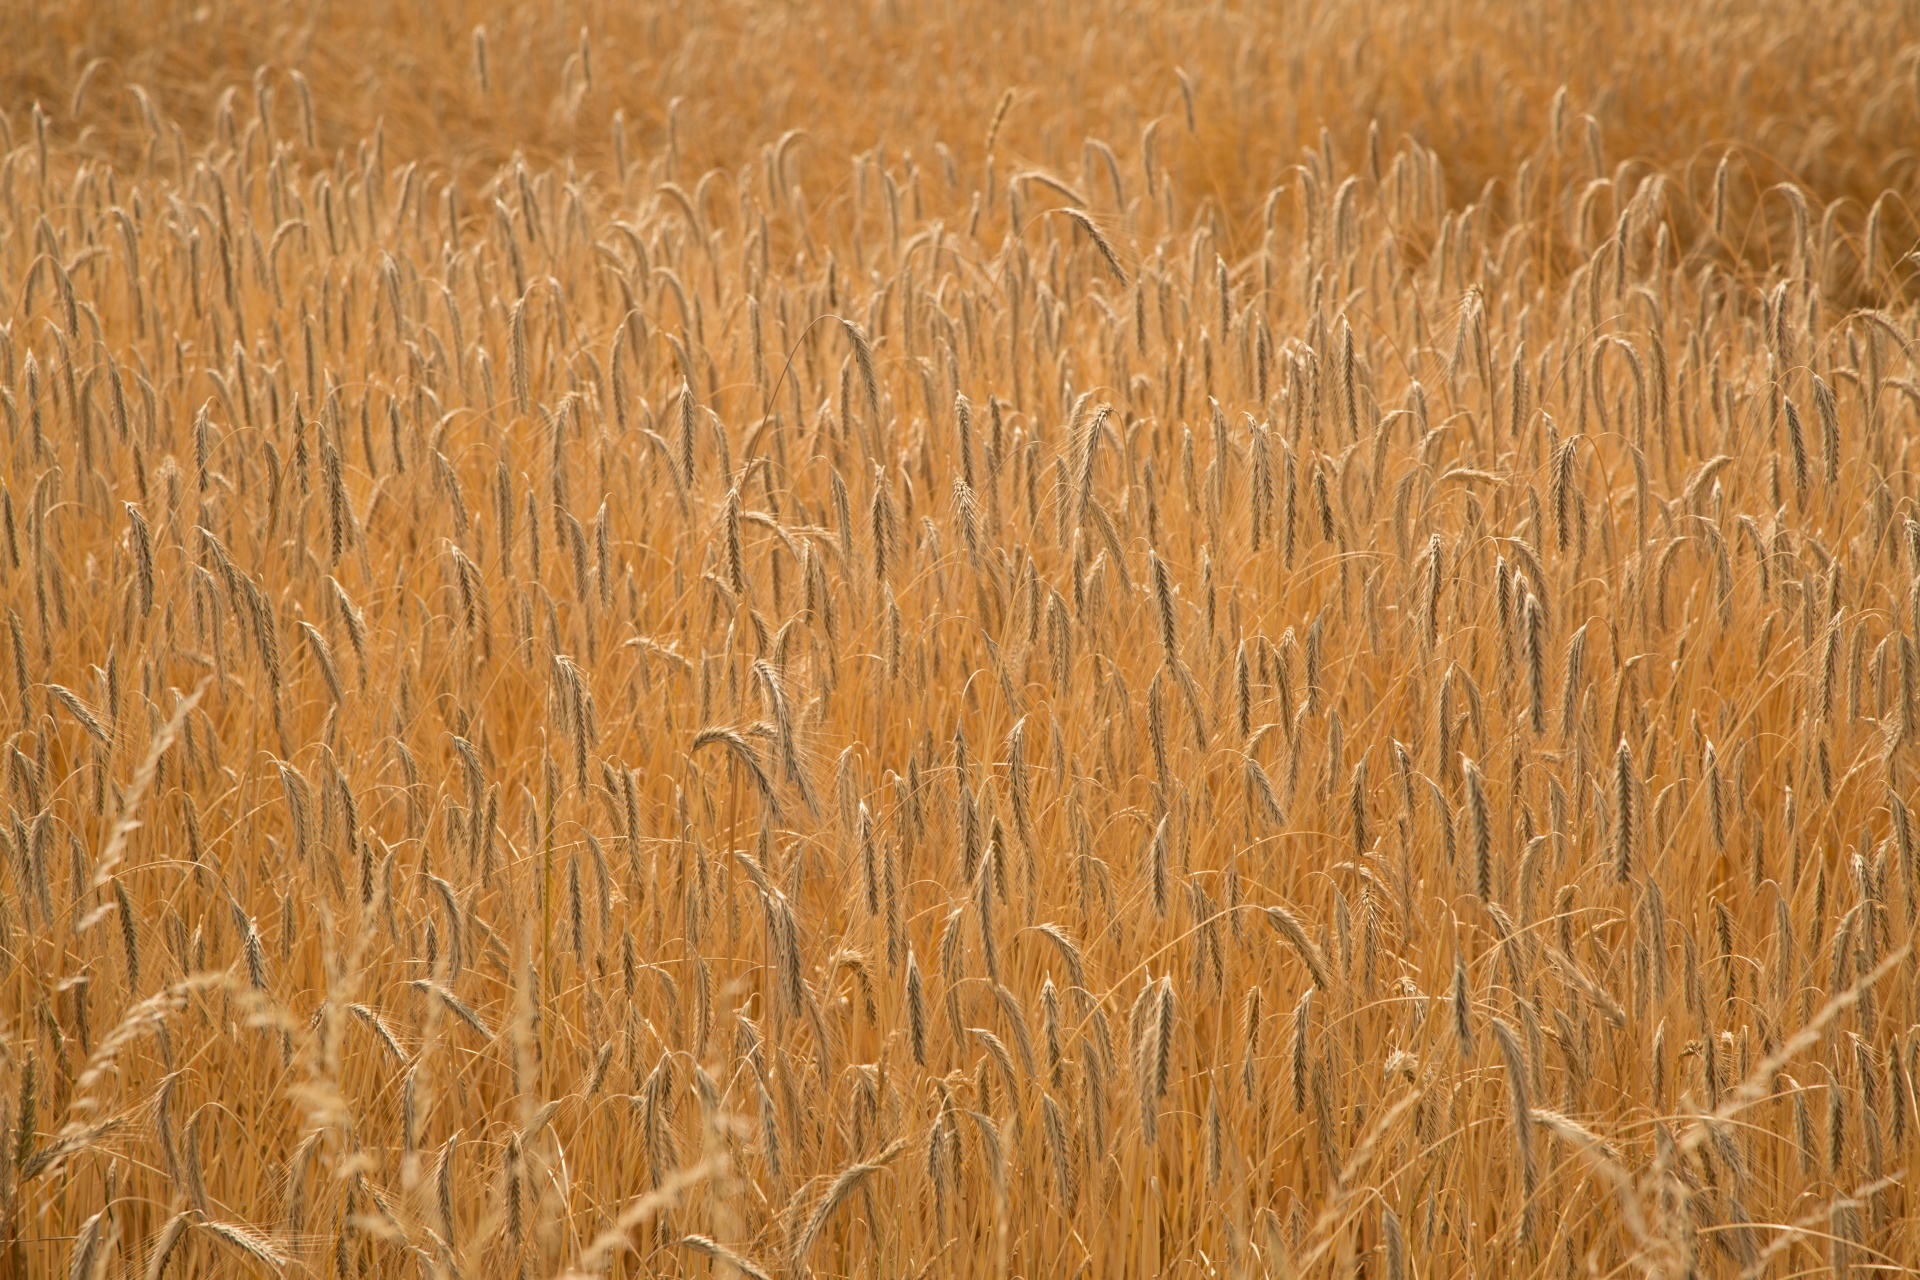 Wheat Field, Vintage